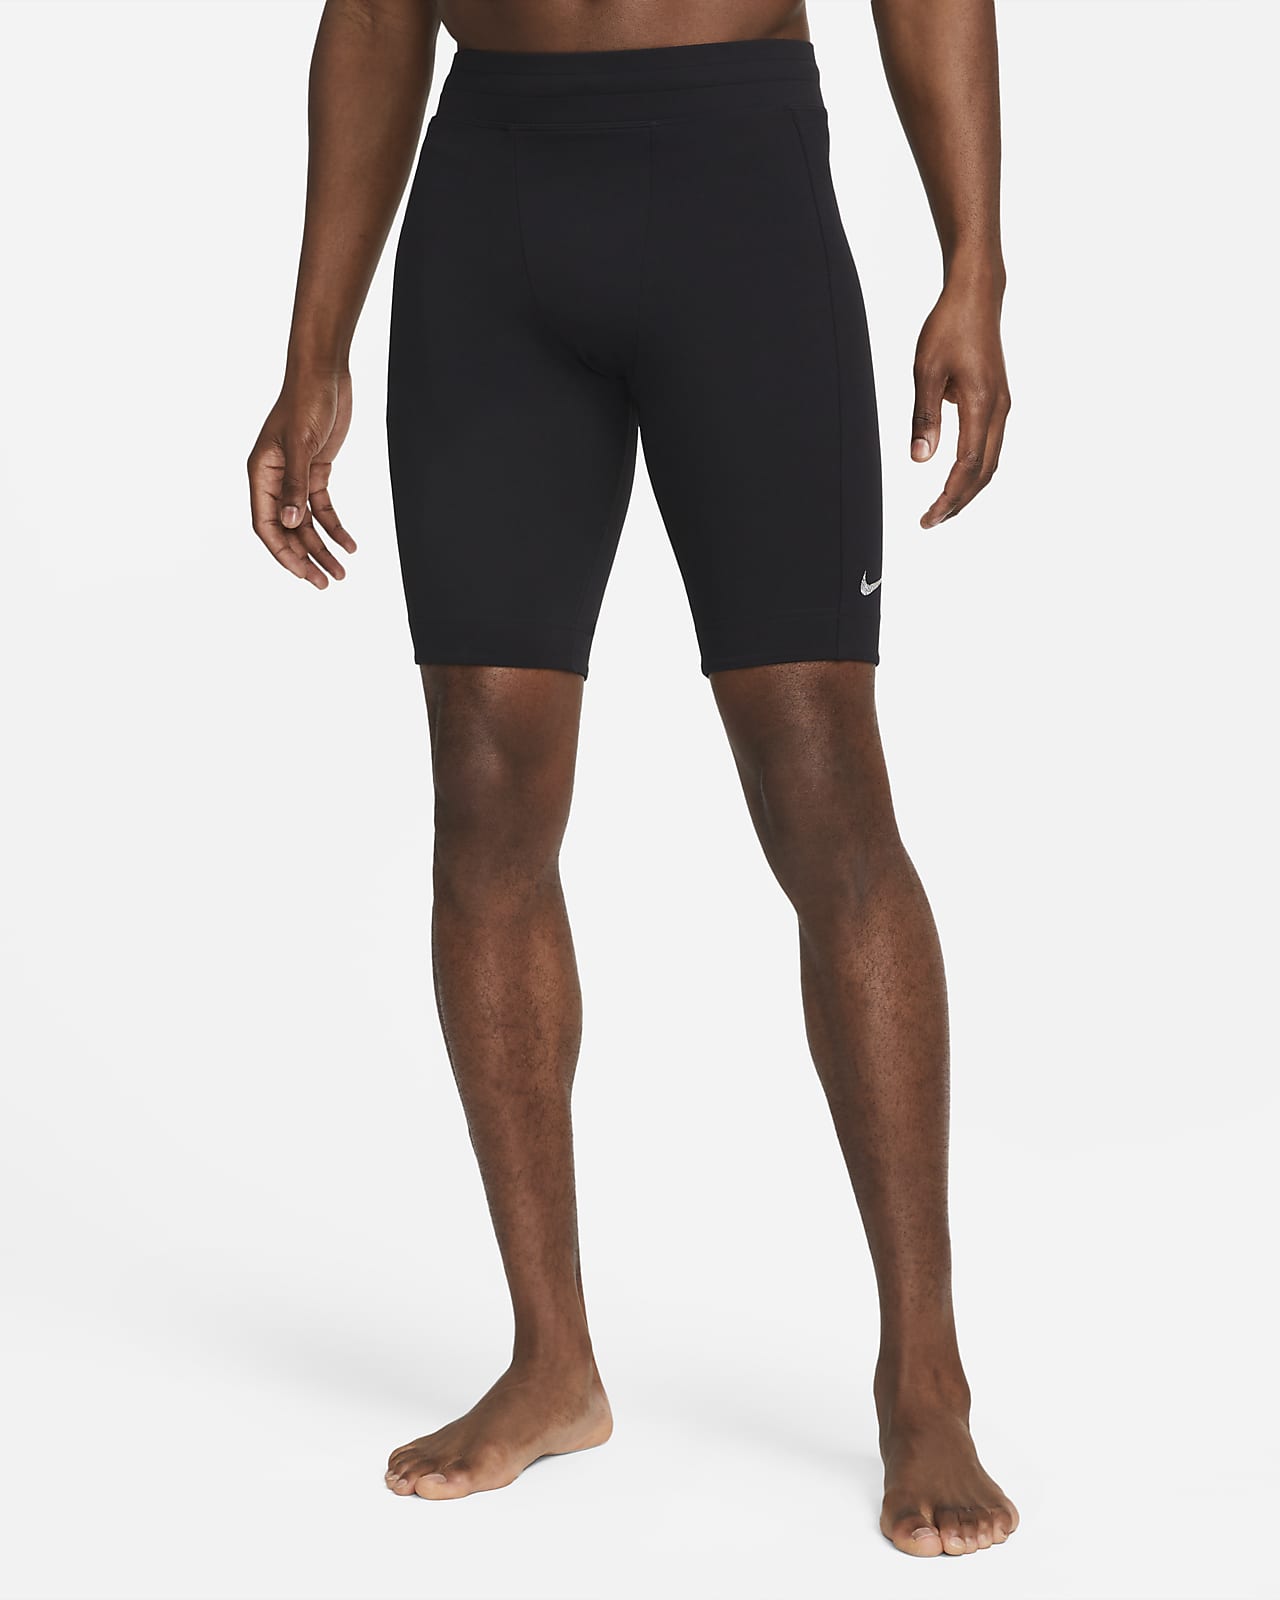 Nike Yoga Dri-FIT Men's Tight Shorts